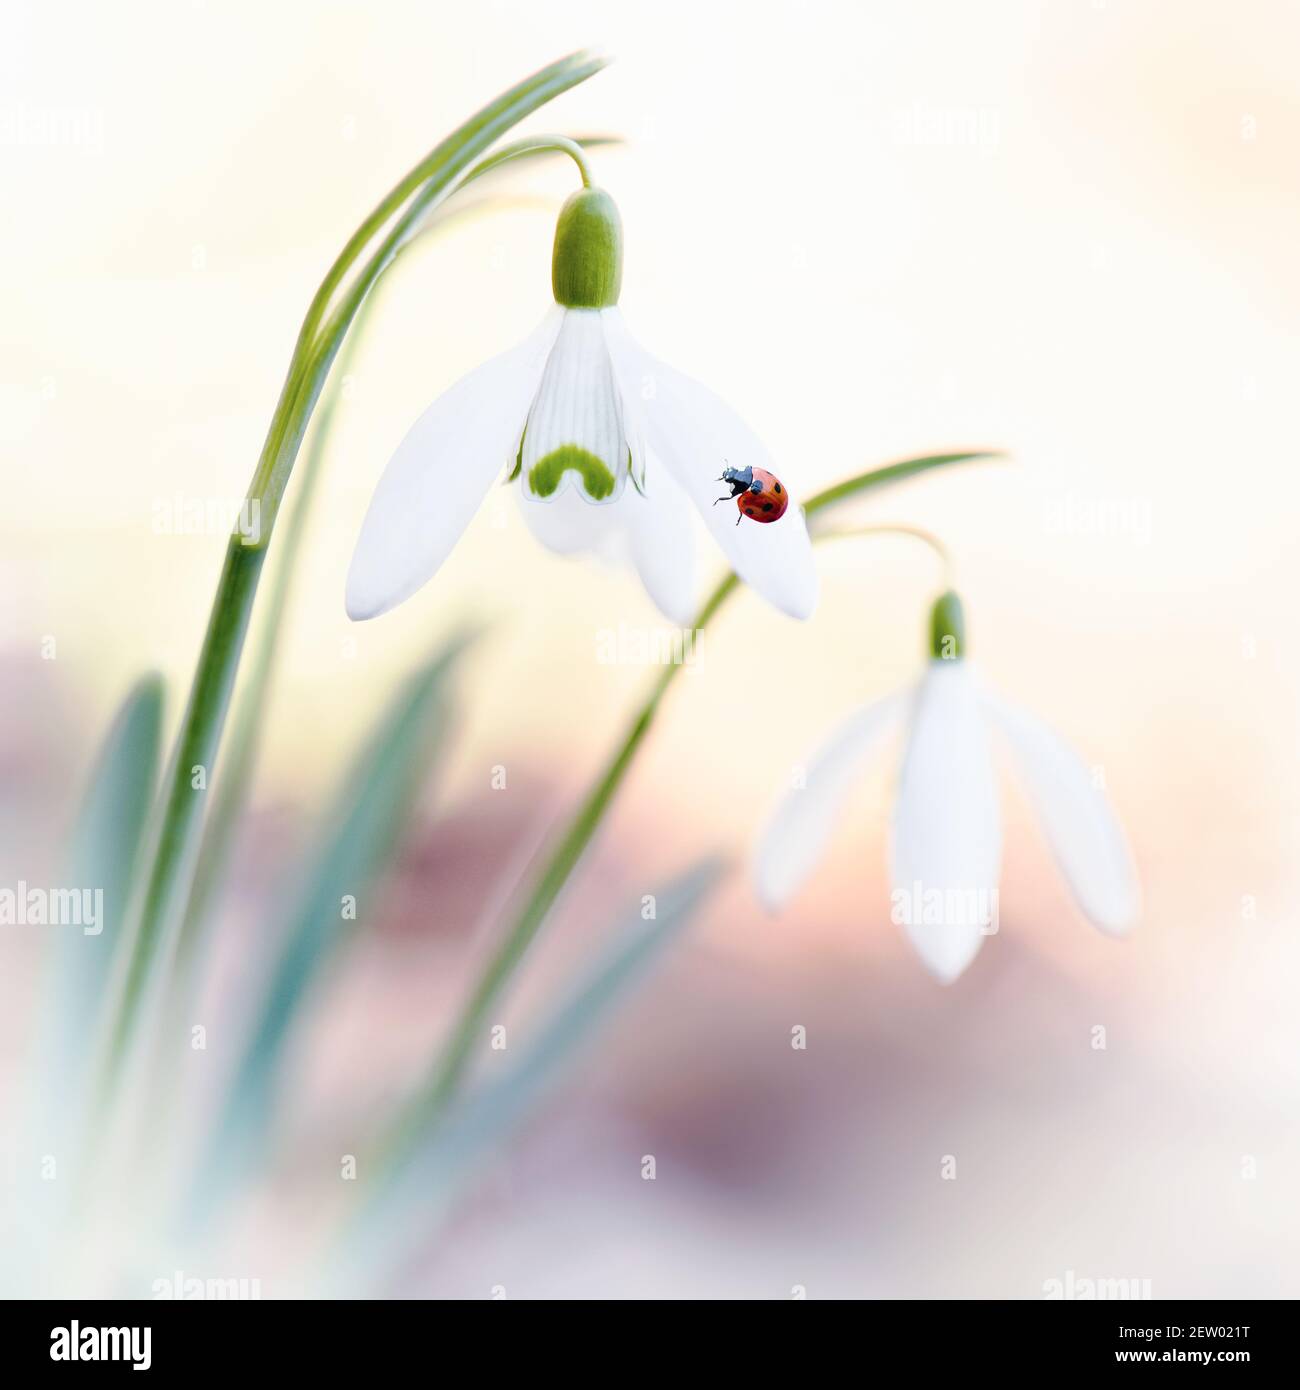 Eine hübsche Nahaufnahme eines Schneeglöckchen-Paares - galanthus nivalis mit Marienkäfer oder Marienkäfer, der auf einem Schneeglöckchen-Blütenblatt ruht, heller unscharfer Hintergrund. Stockfoto